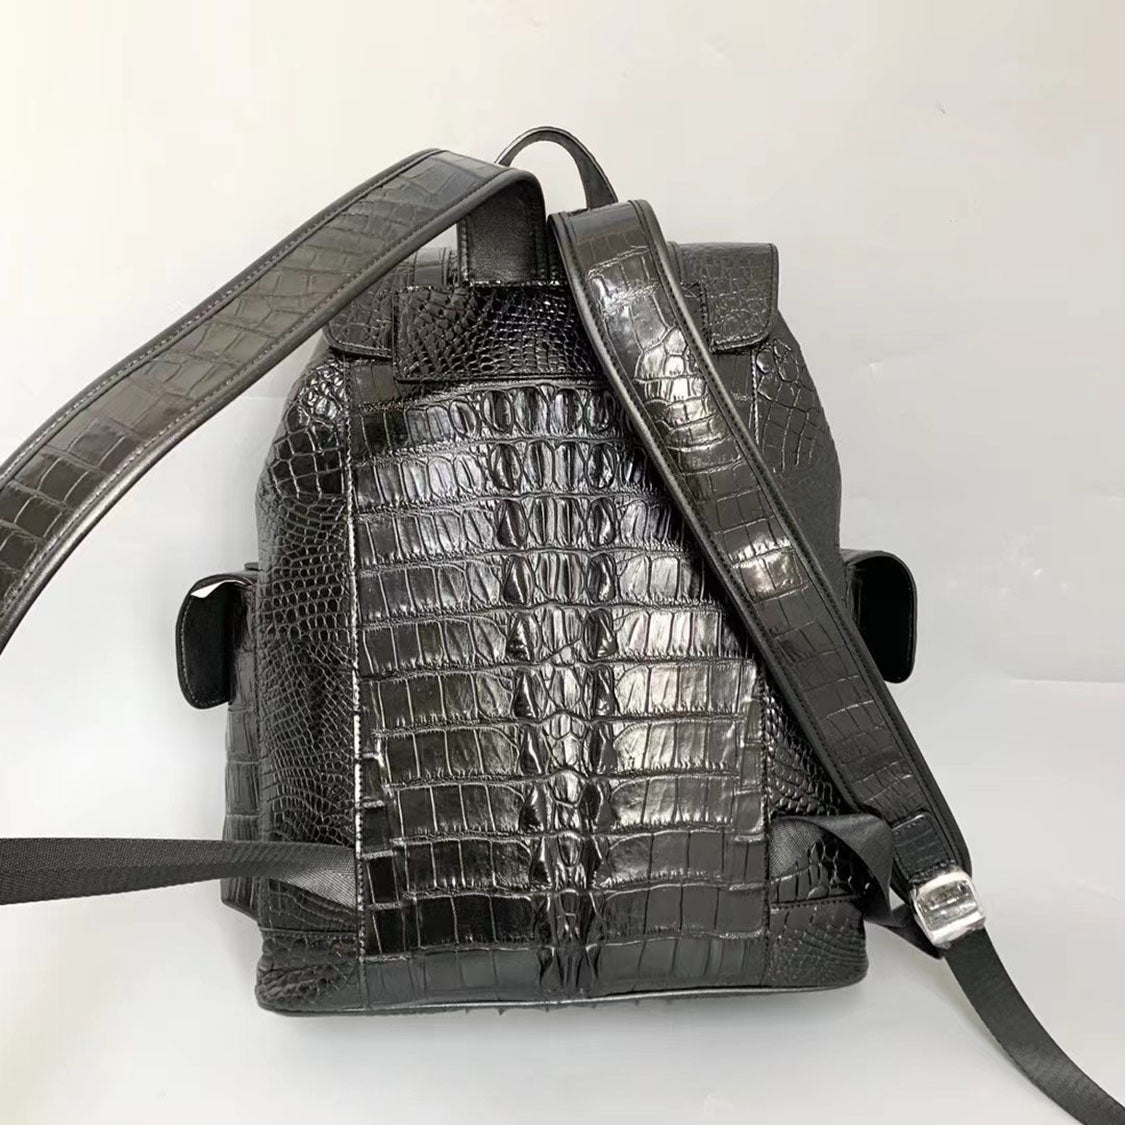 Handcrafted Crocodile Alligator Leather Backpack Shoulder Bag Travel Bag Black